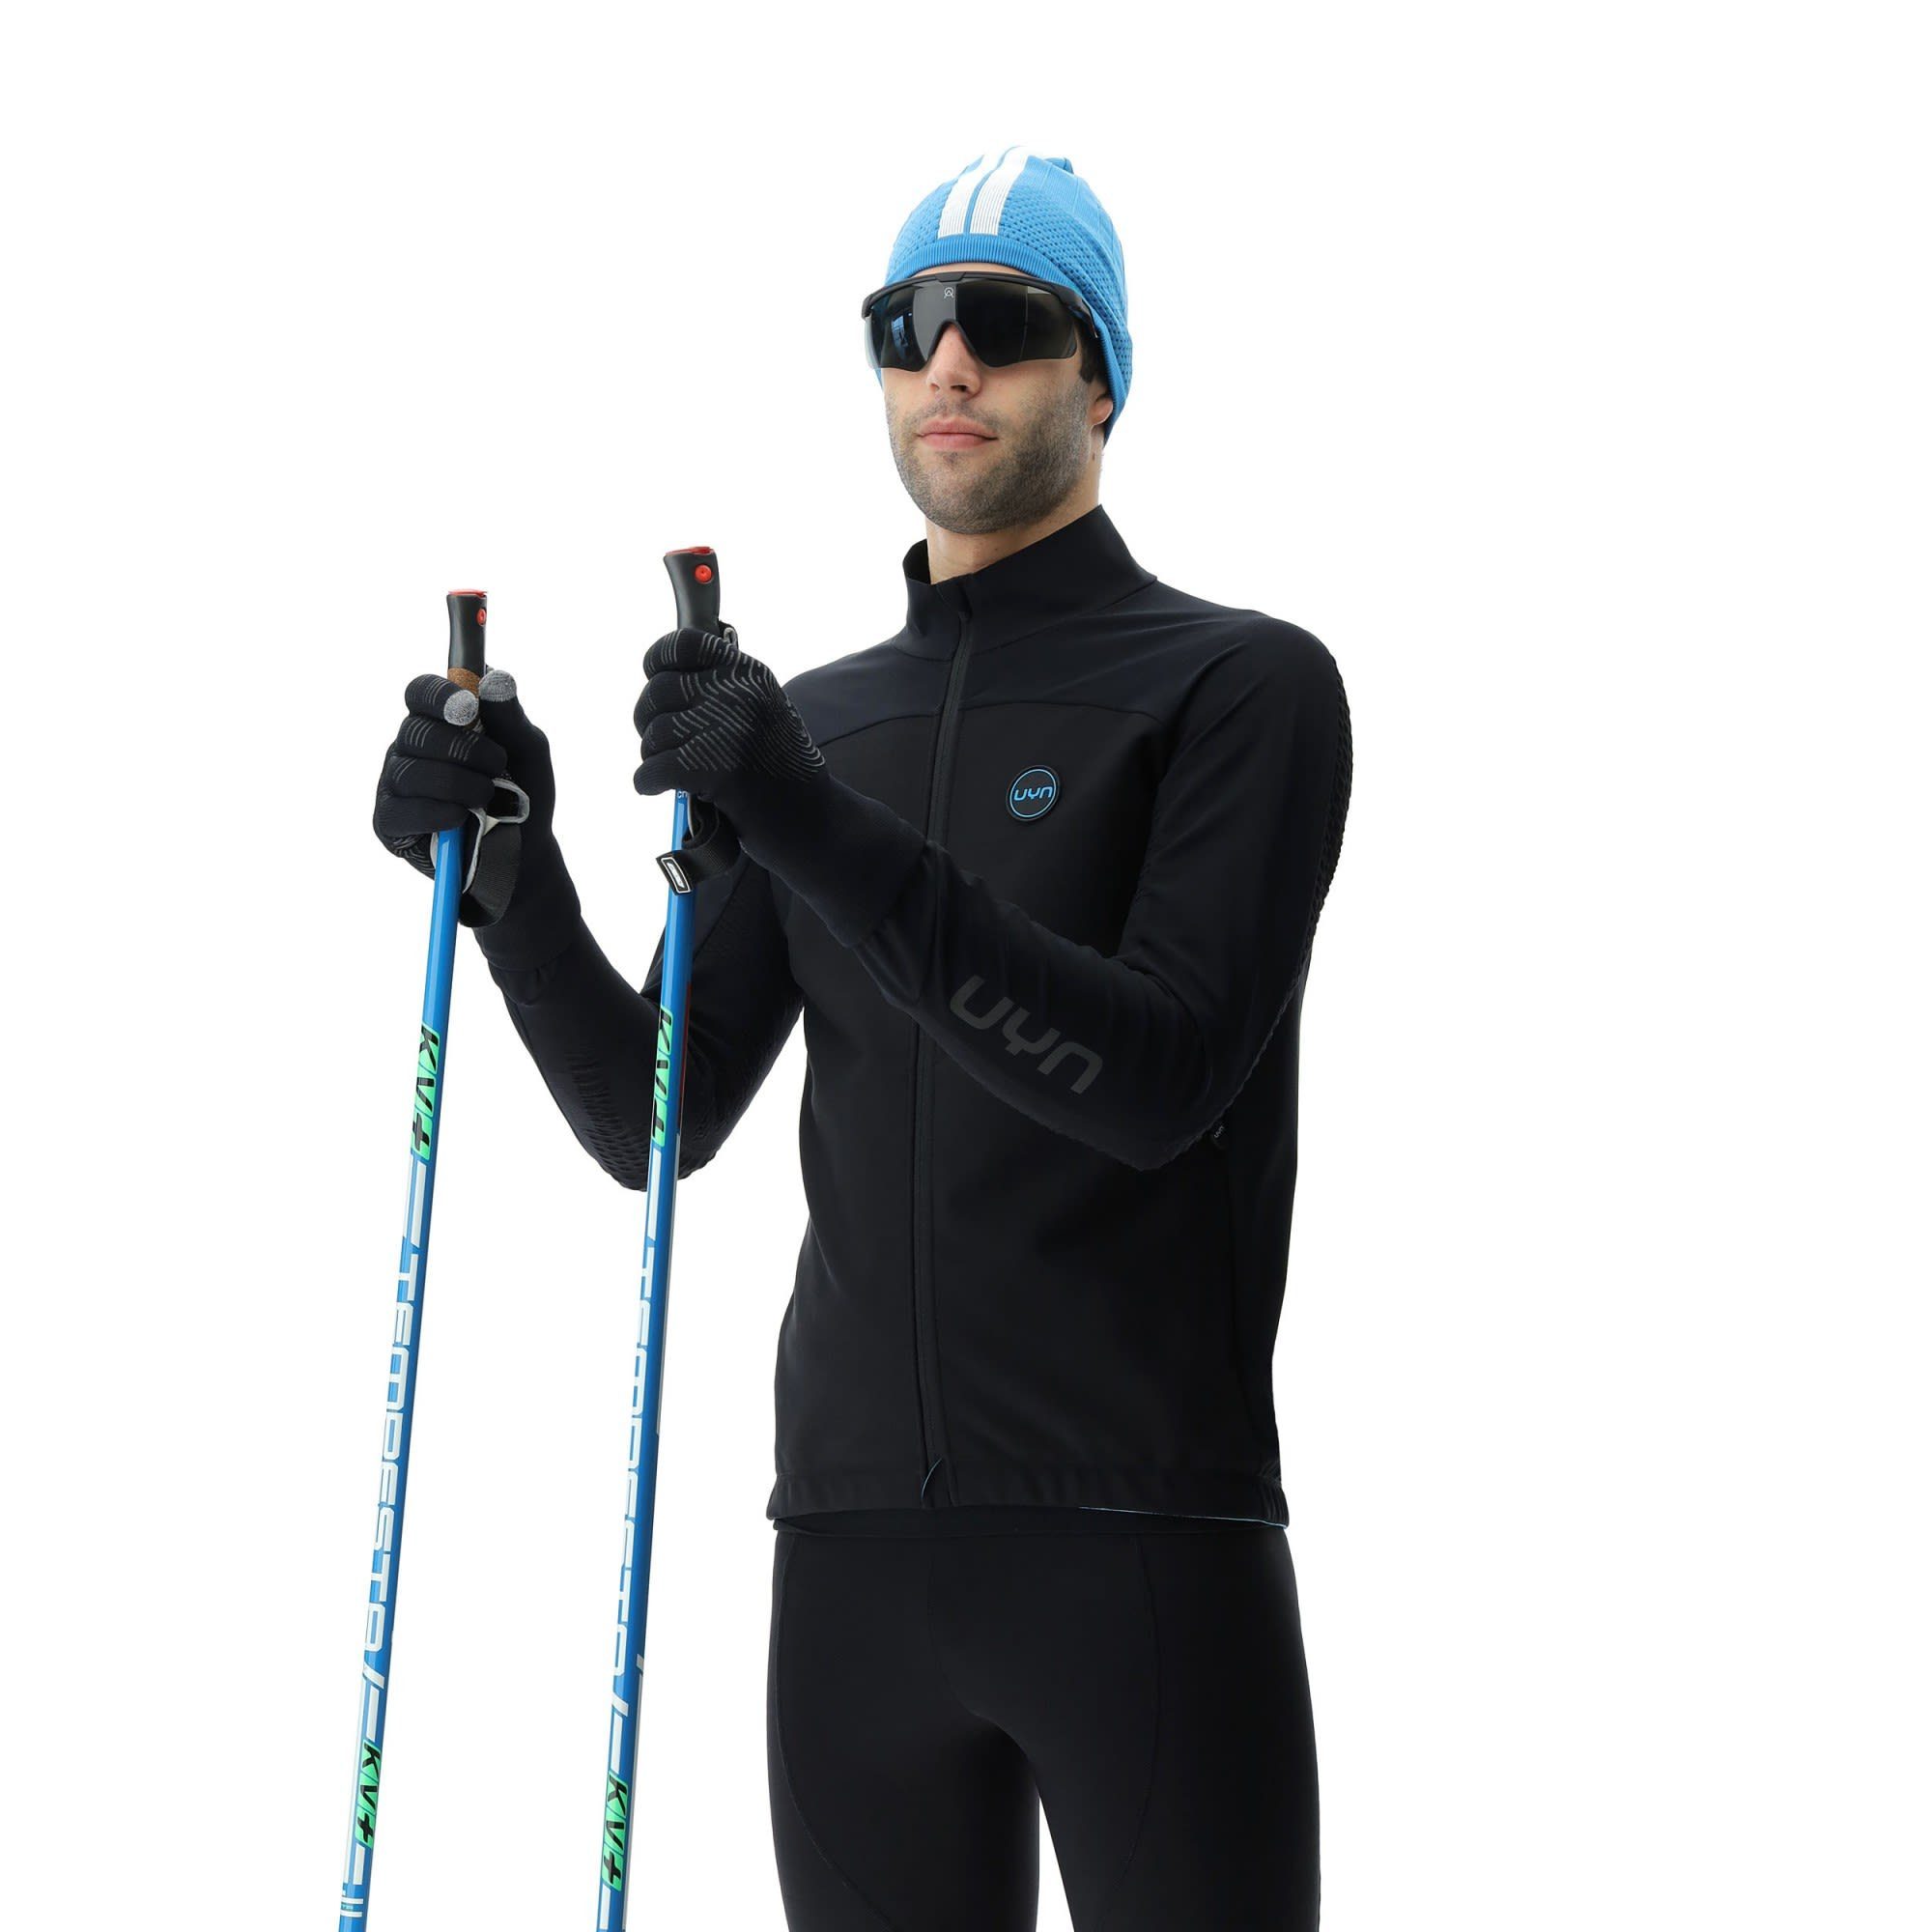 Turquoise - Black Black Uyn Herren M UYN Skiing Country Cross - Coreshell Anorak Jacket